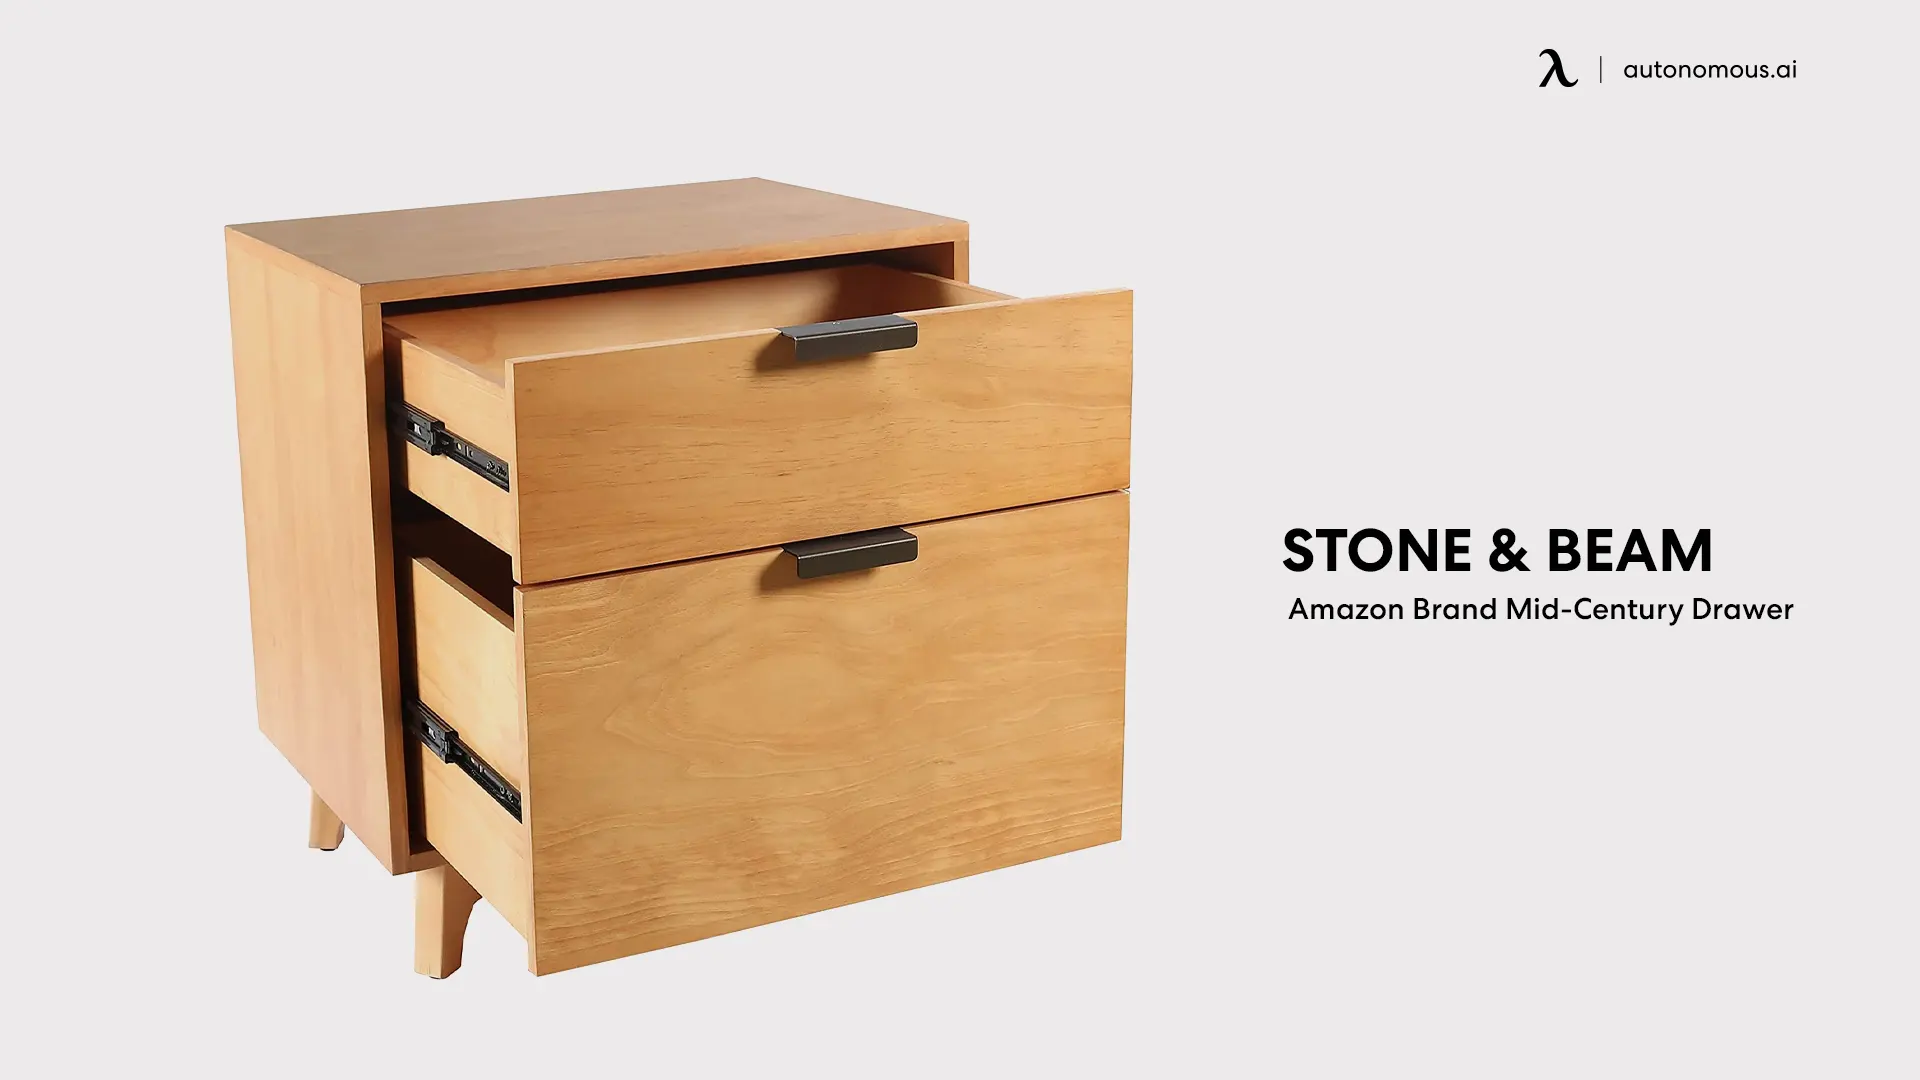 Amazon Brand Stone & Beam Mid-Century Drawer